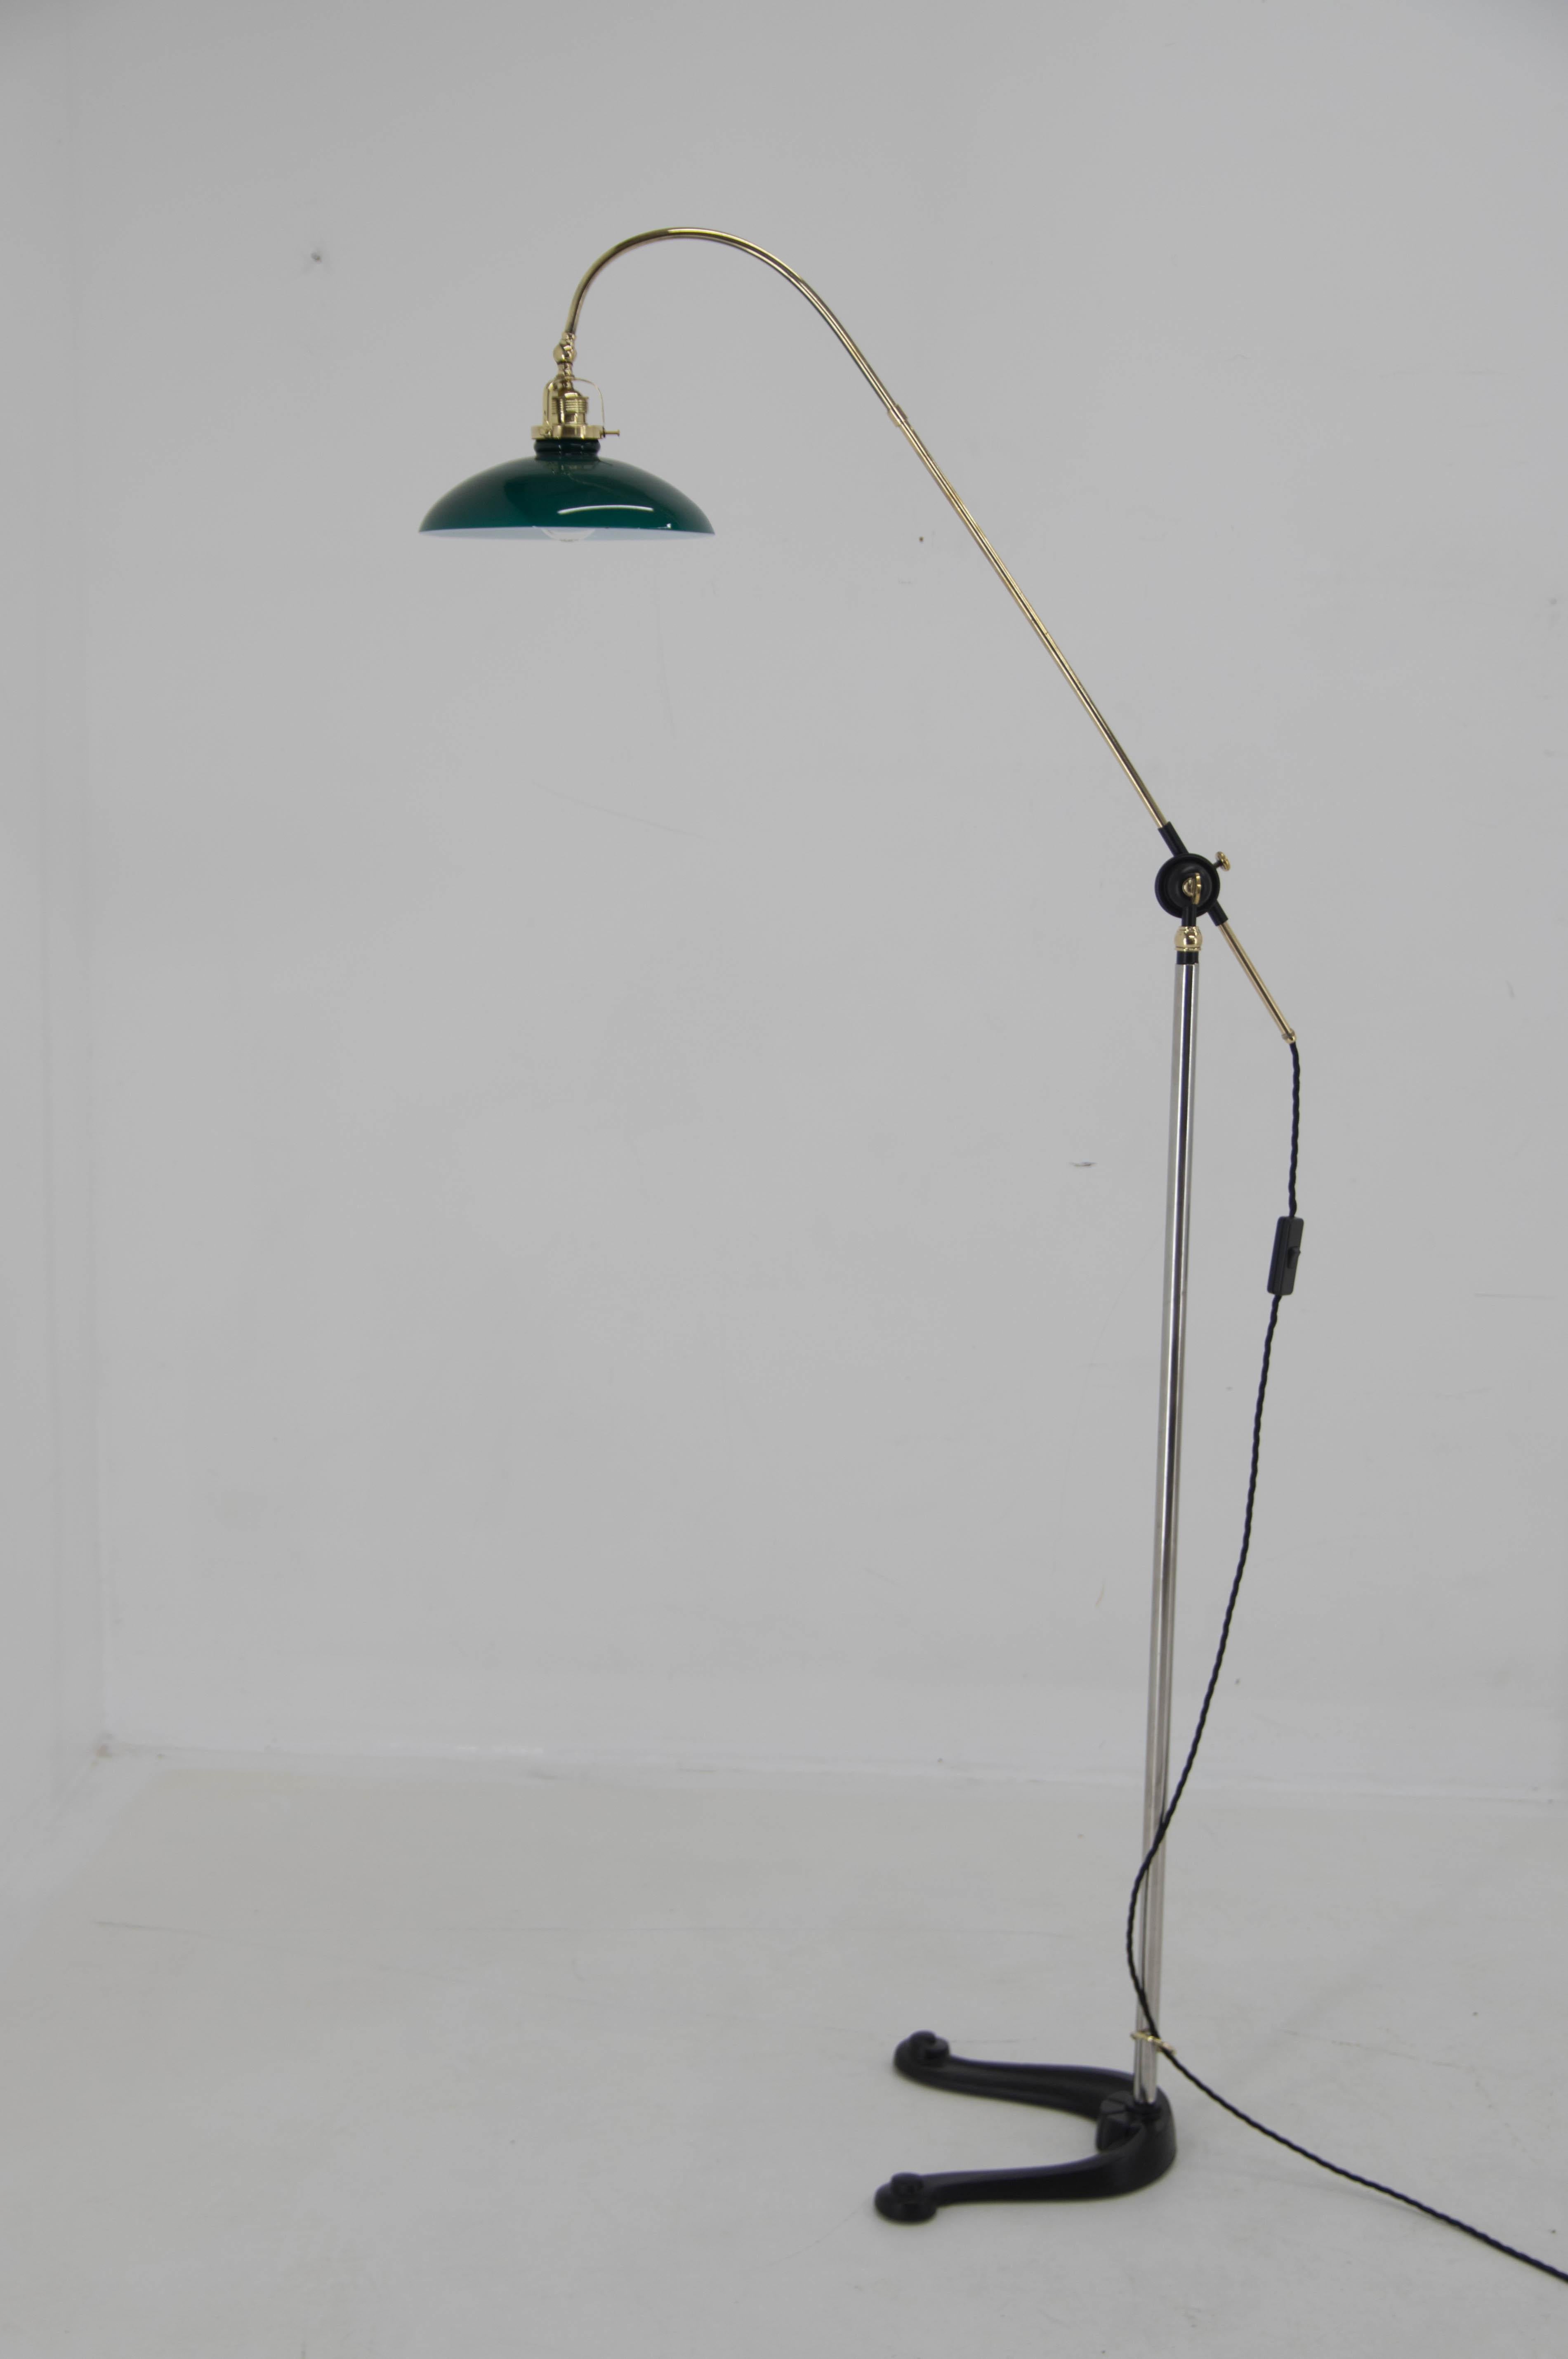 Art Deco Stehleuchte mit verstellbarem Arm und Schirm.
Hergestellt in Dänemark in den 1940er Jahren.
Vollständig restauriert, neu lackiert, neu verkabelt.
1x40W, E25-E27 Glühbirne
Inklusive US-Steckeradapter